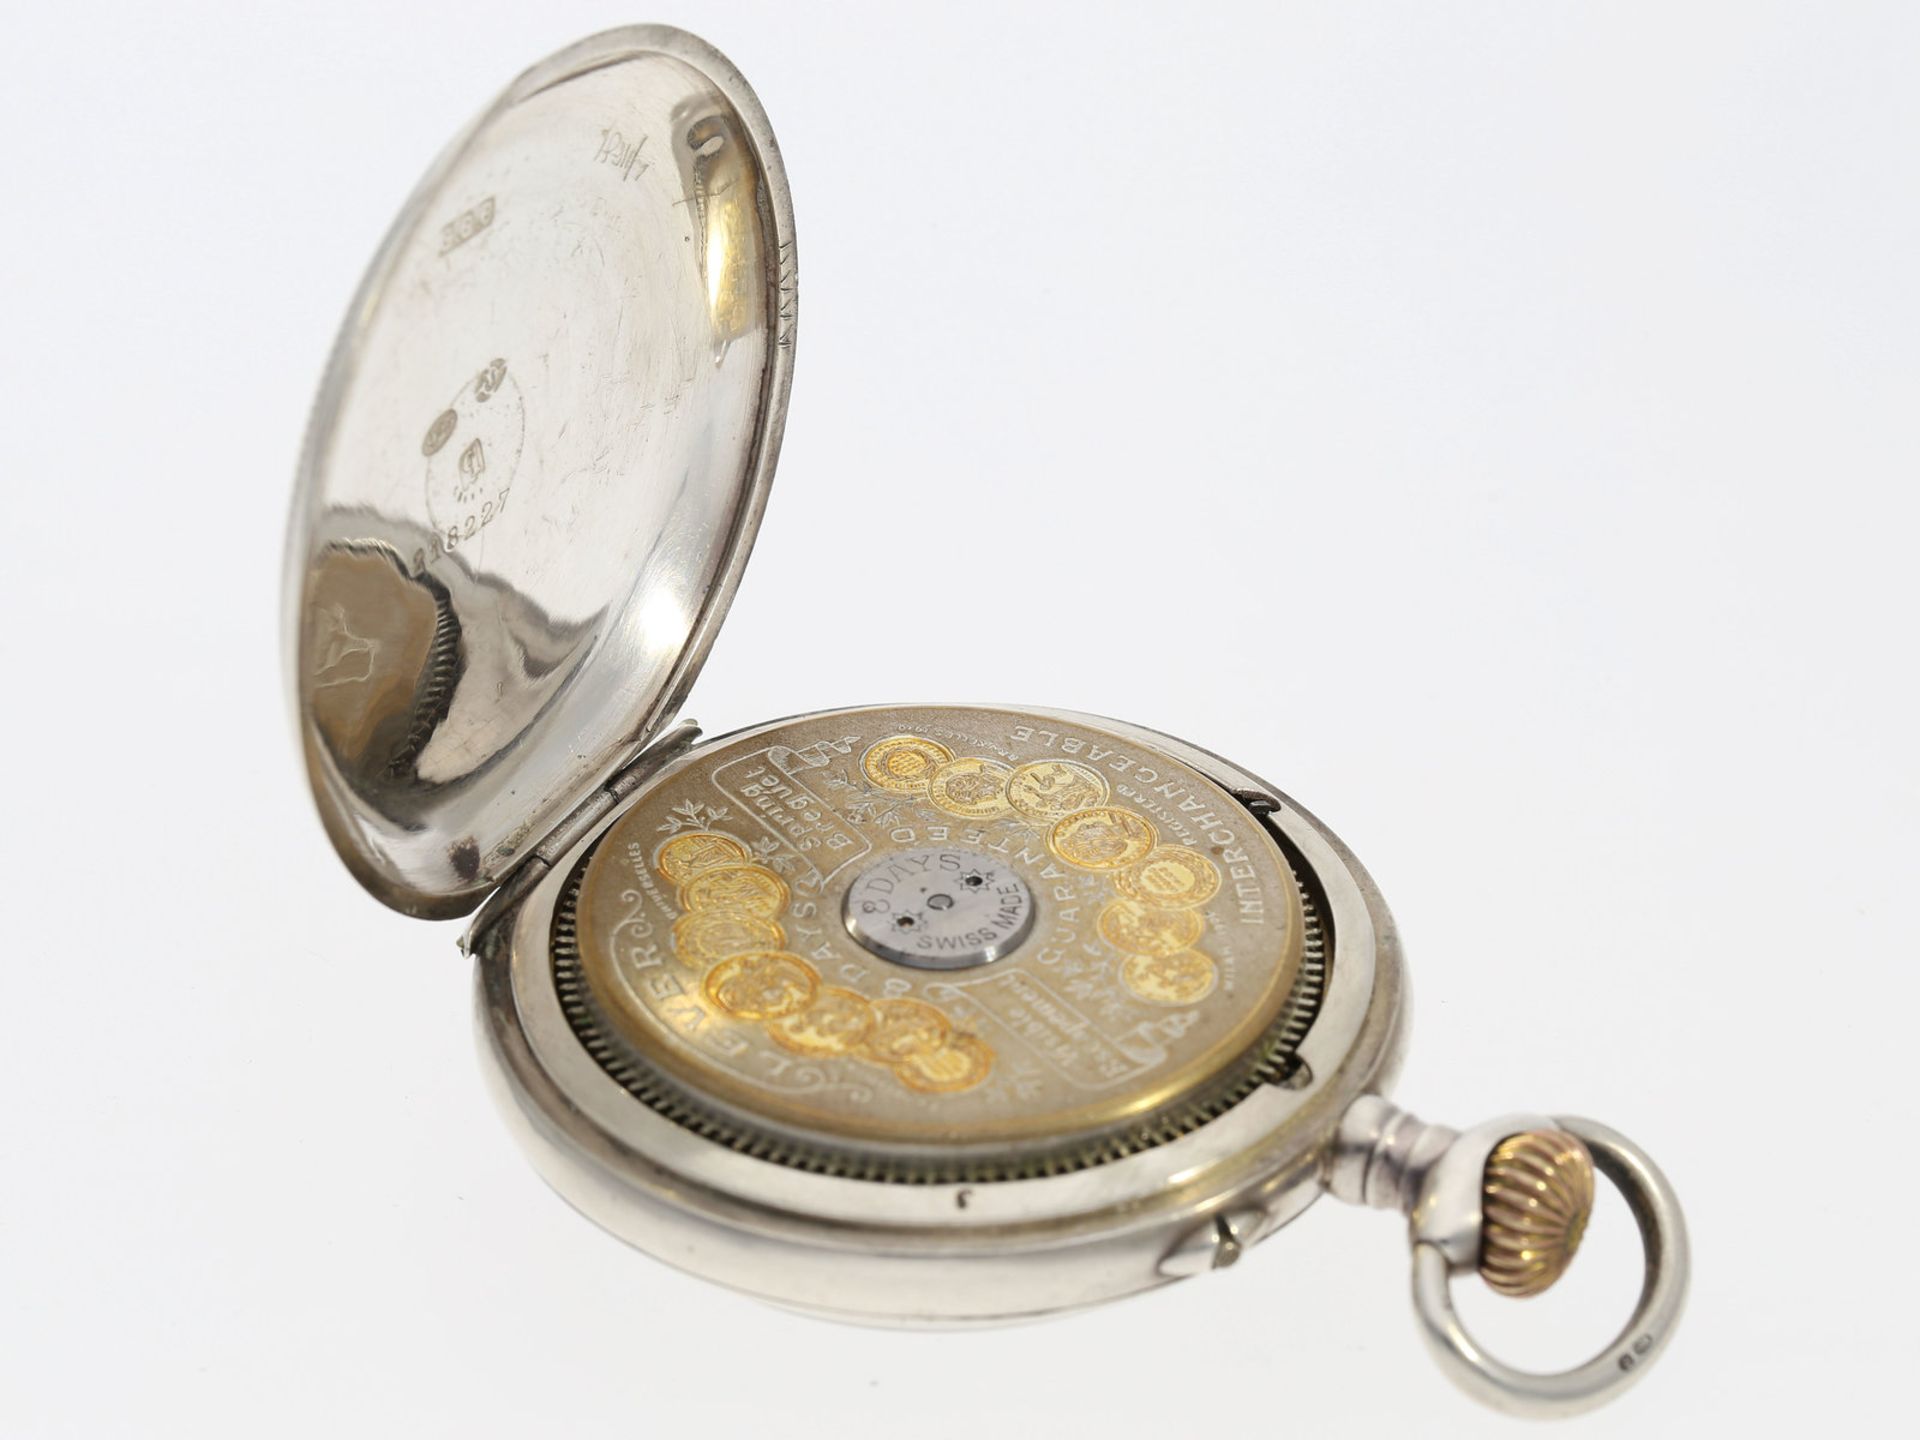 Taschenuhr: sehr schöne silberne 8-Tage Taschenuhr "Hebdomas", Schweiz um 1900Ca. Ø48,5mm, ca. - Bild 3 aus 3